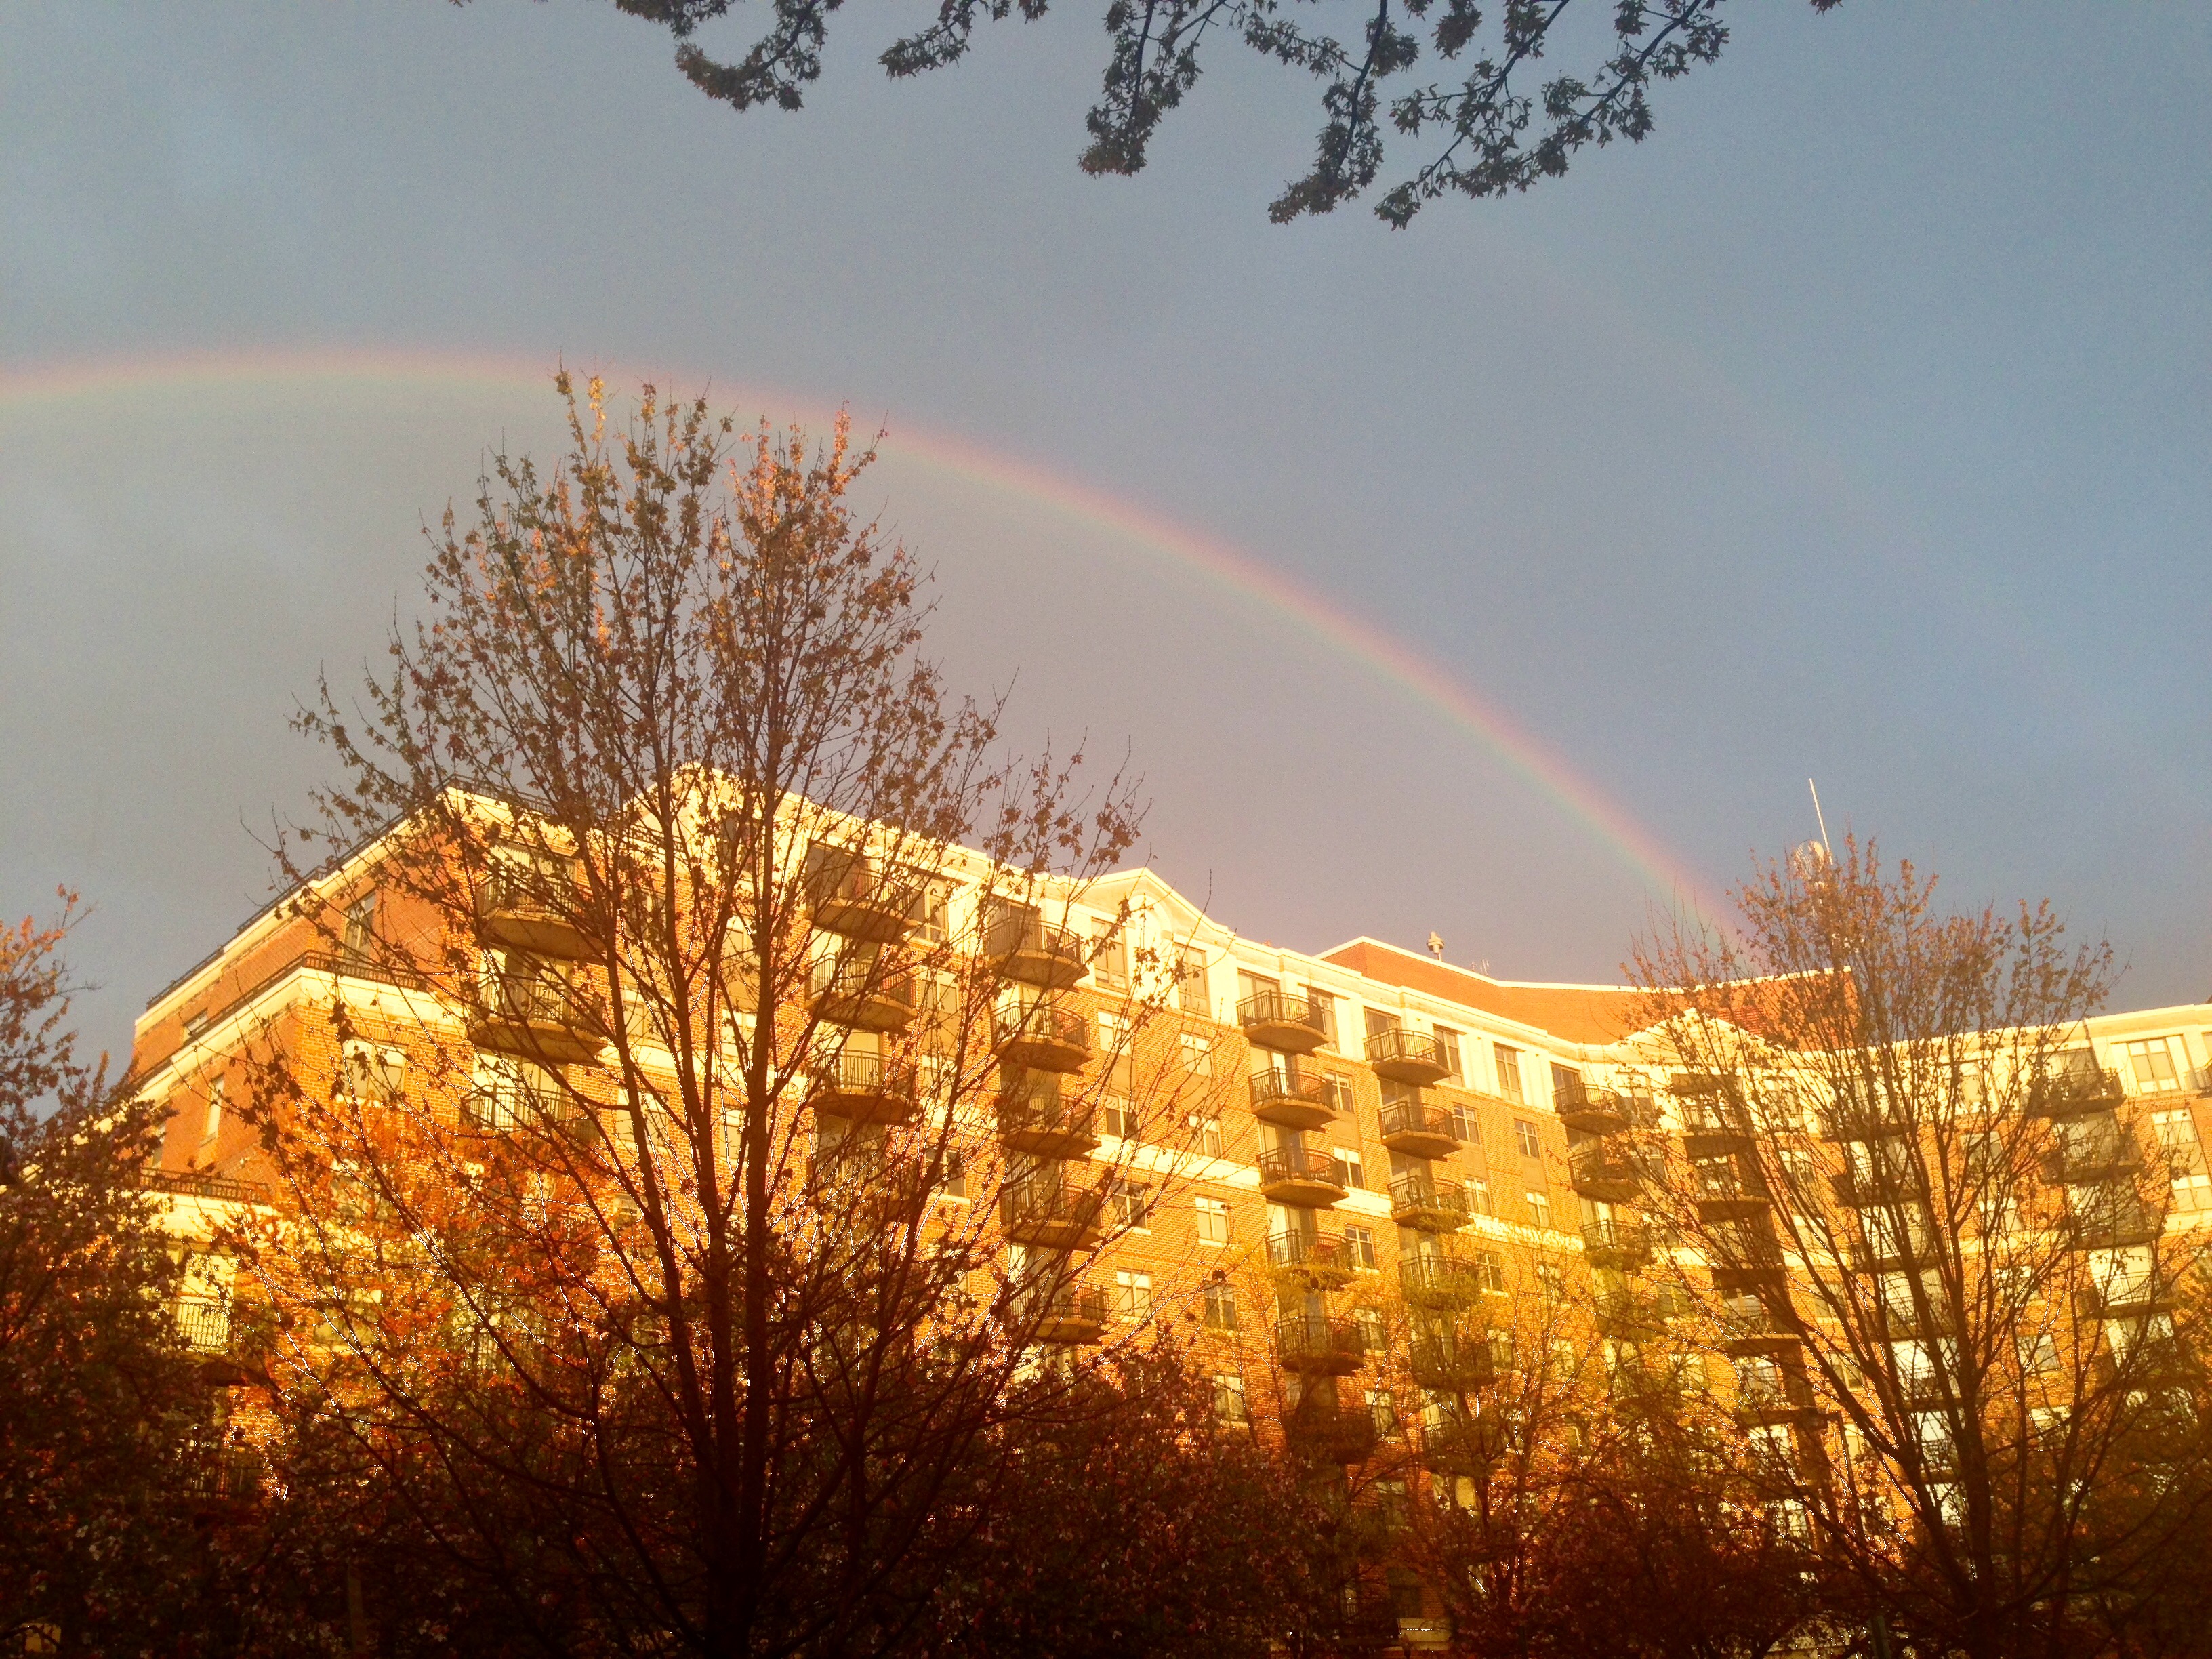 Photos: Rainbow brings color to cloudy Thursday